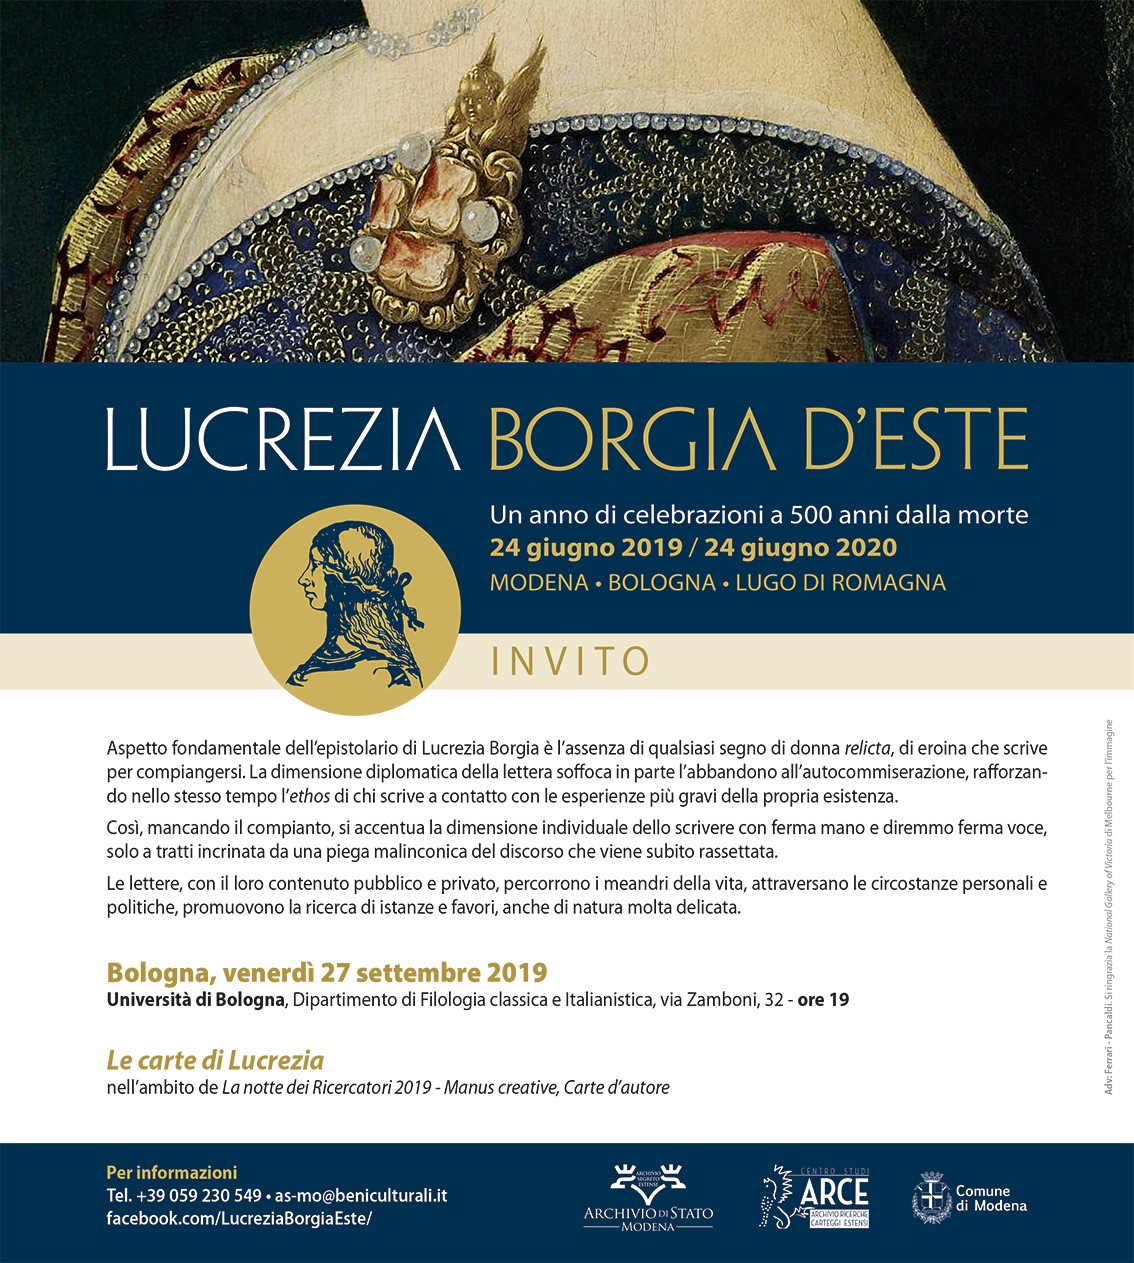 Excellent wrench Motivation Archivio di Stato di Modena: Lucrezia Borgia d'Este. Celebrazioni a 500  anni dalla morte